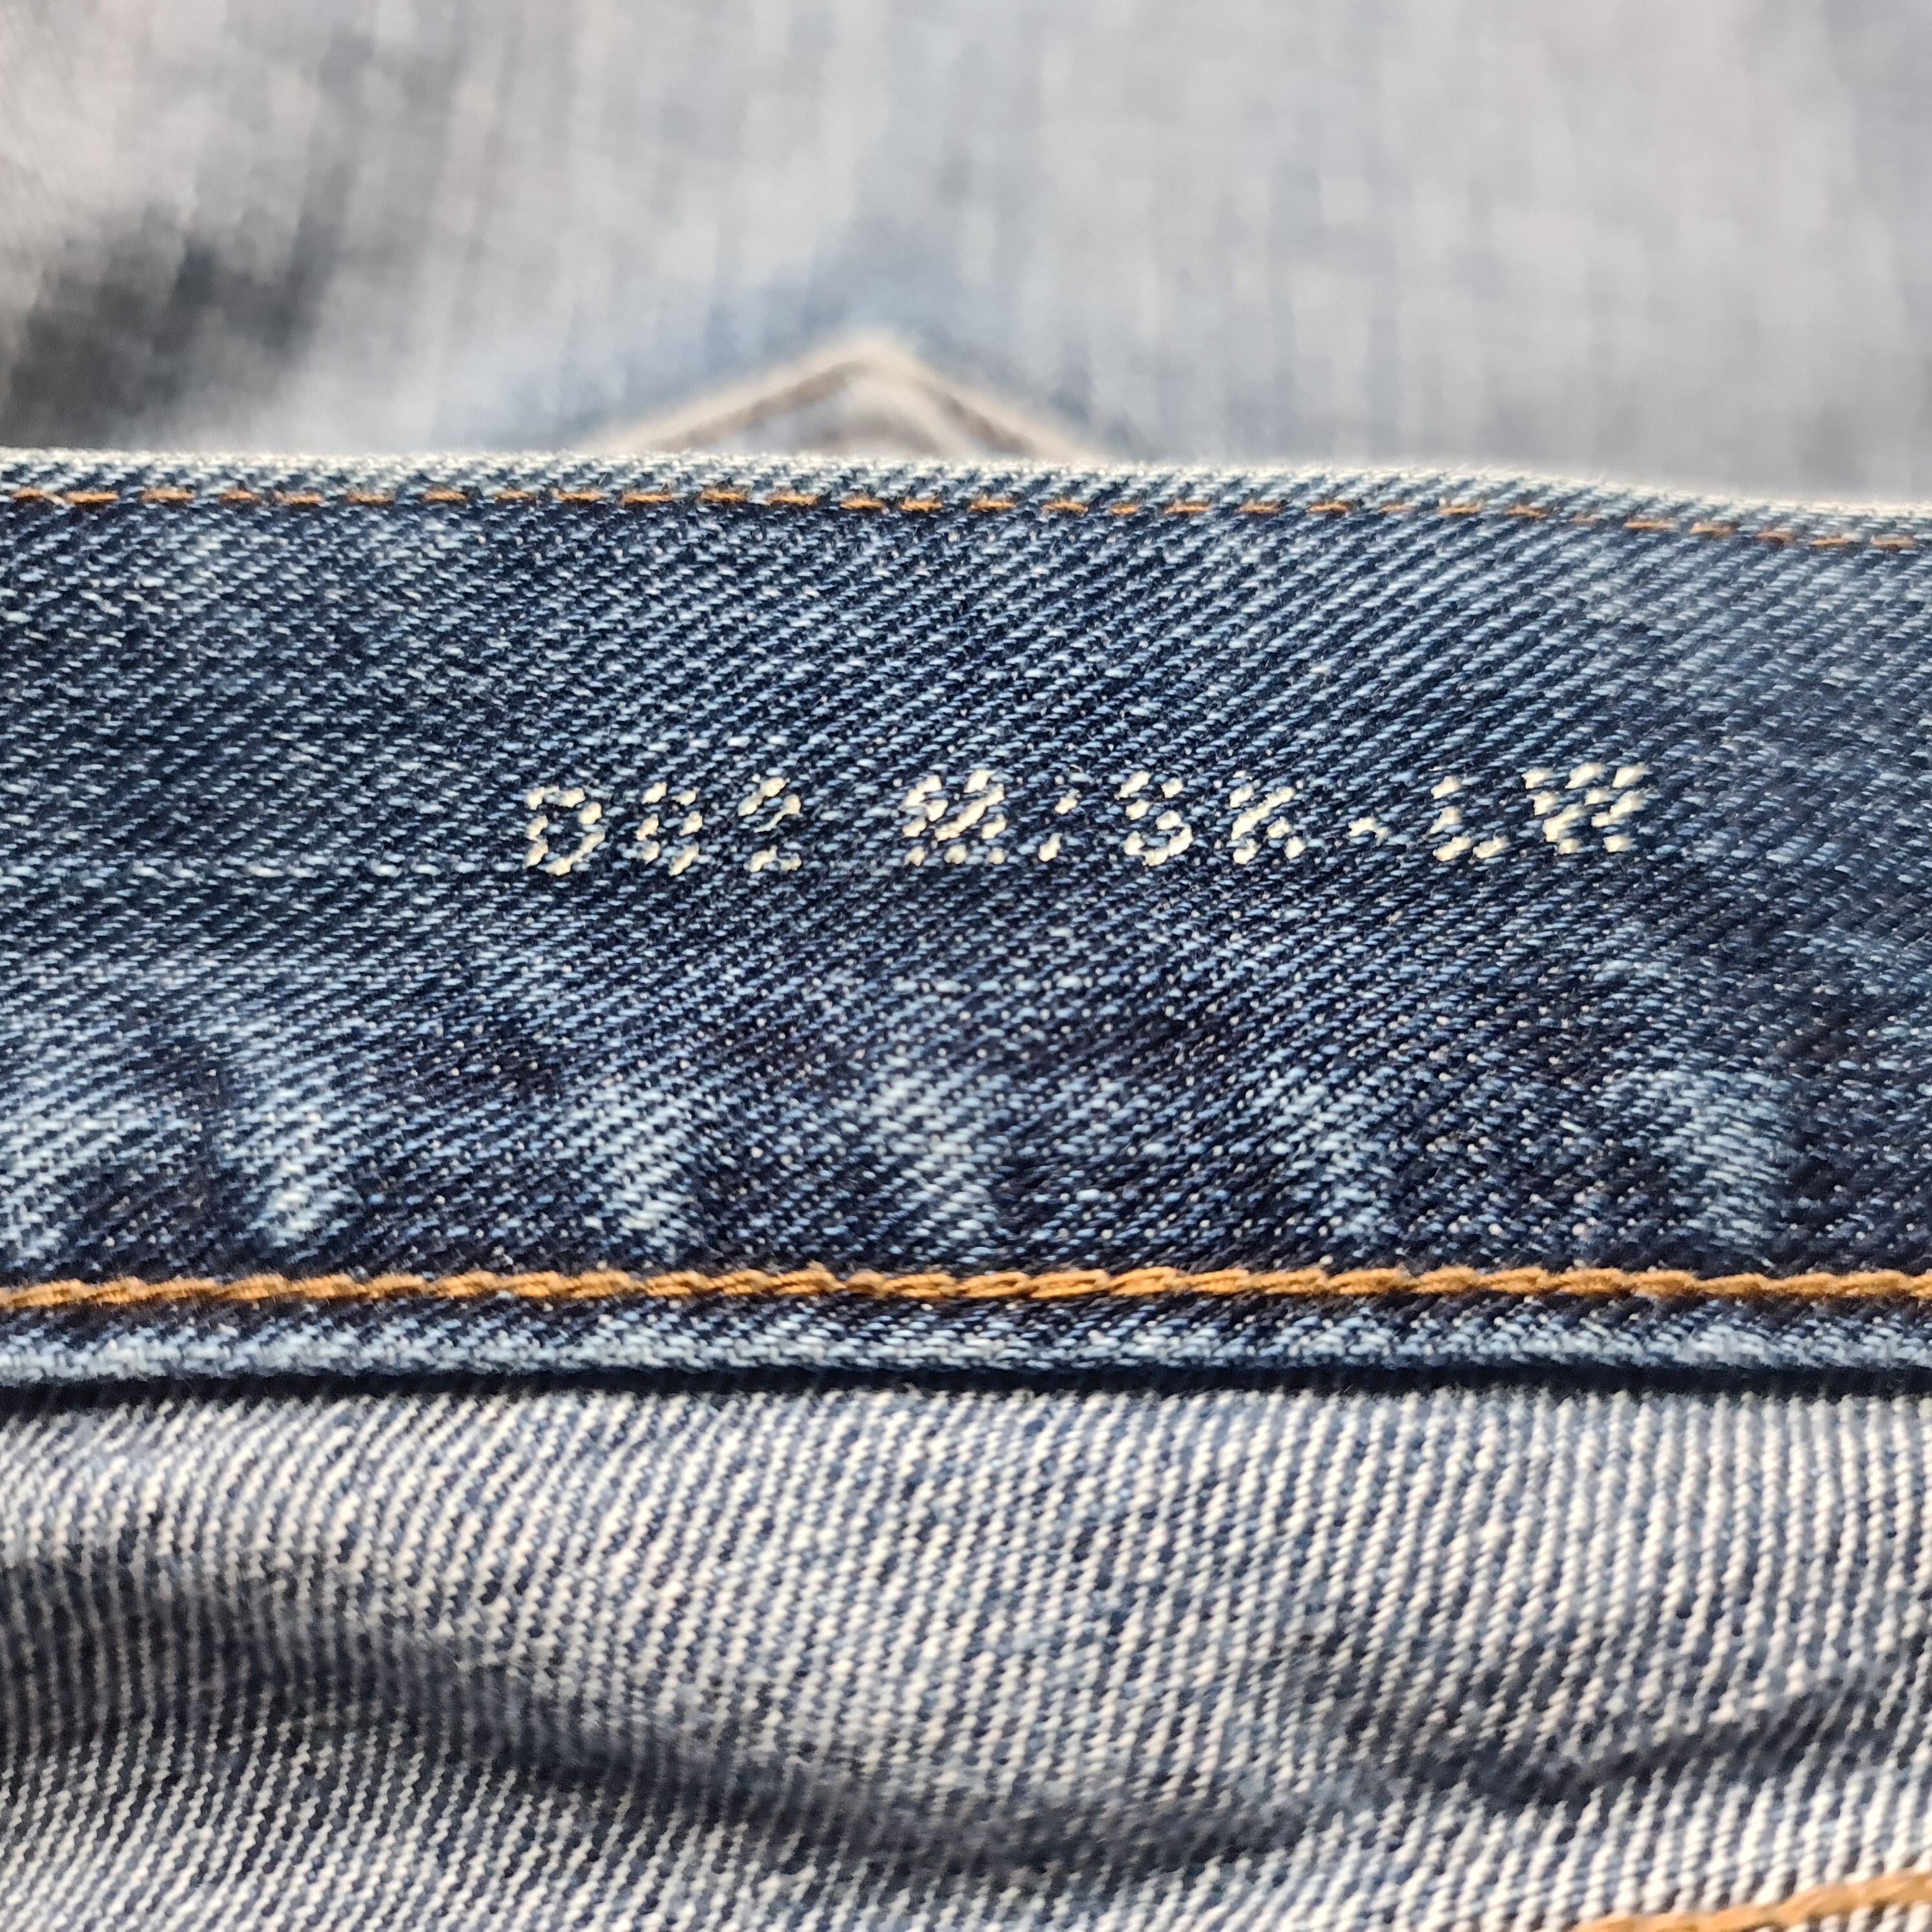 Saint Laurent Paris - AW17 D02 Blue Washed Skinny Jeans - 5